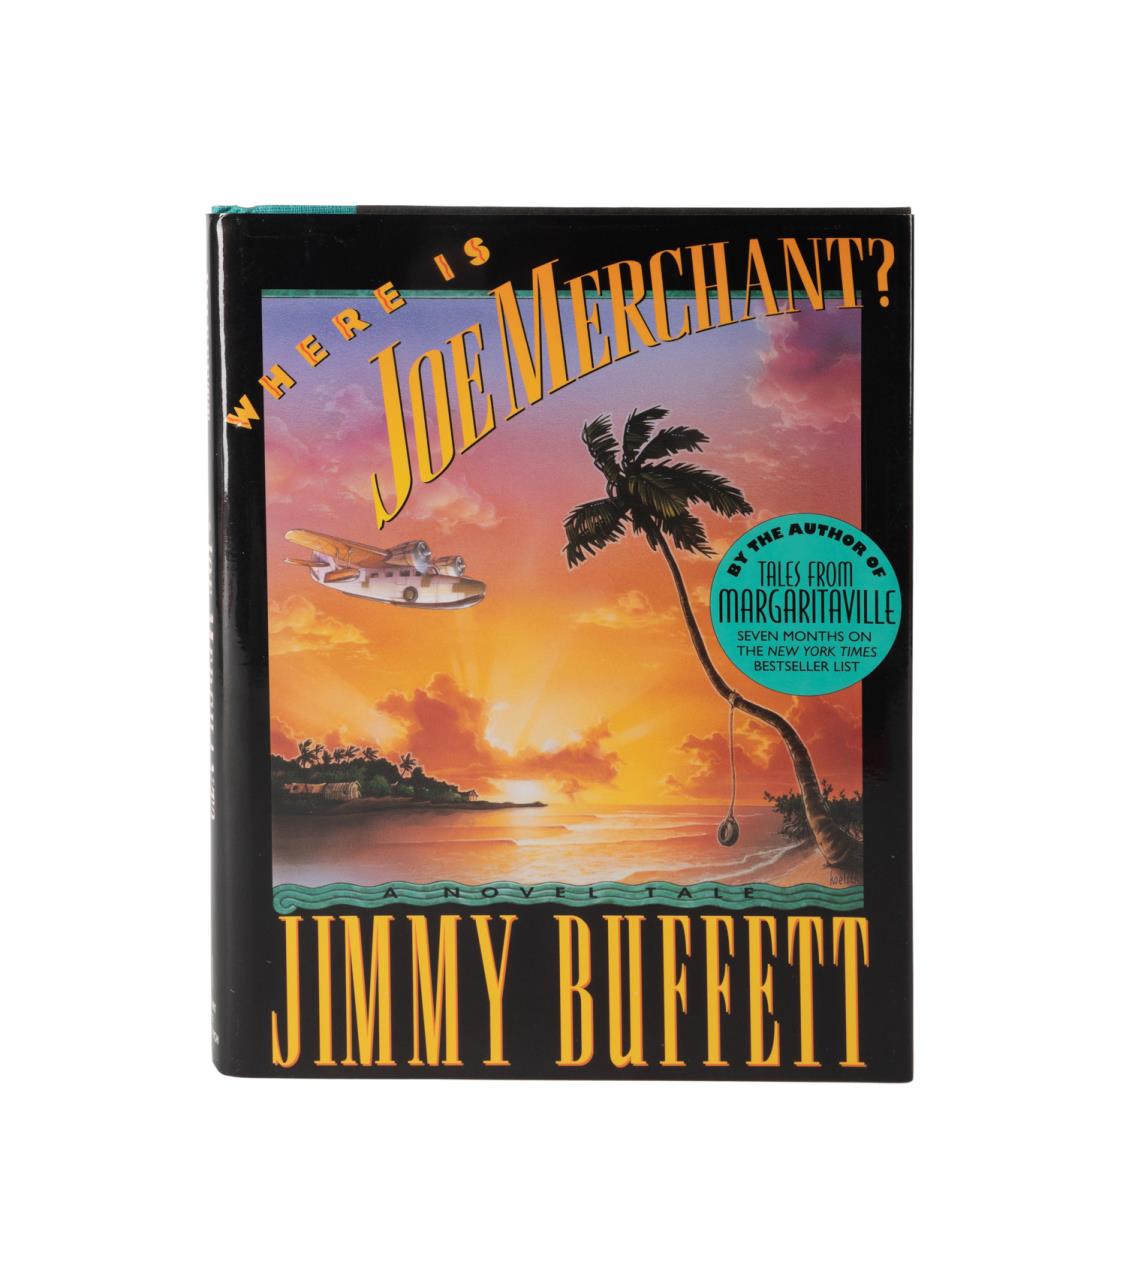 JIMMY BUFFETT SIGNED BOOK WHERE 3cd9bb